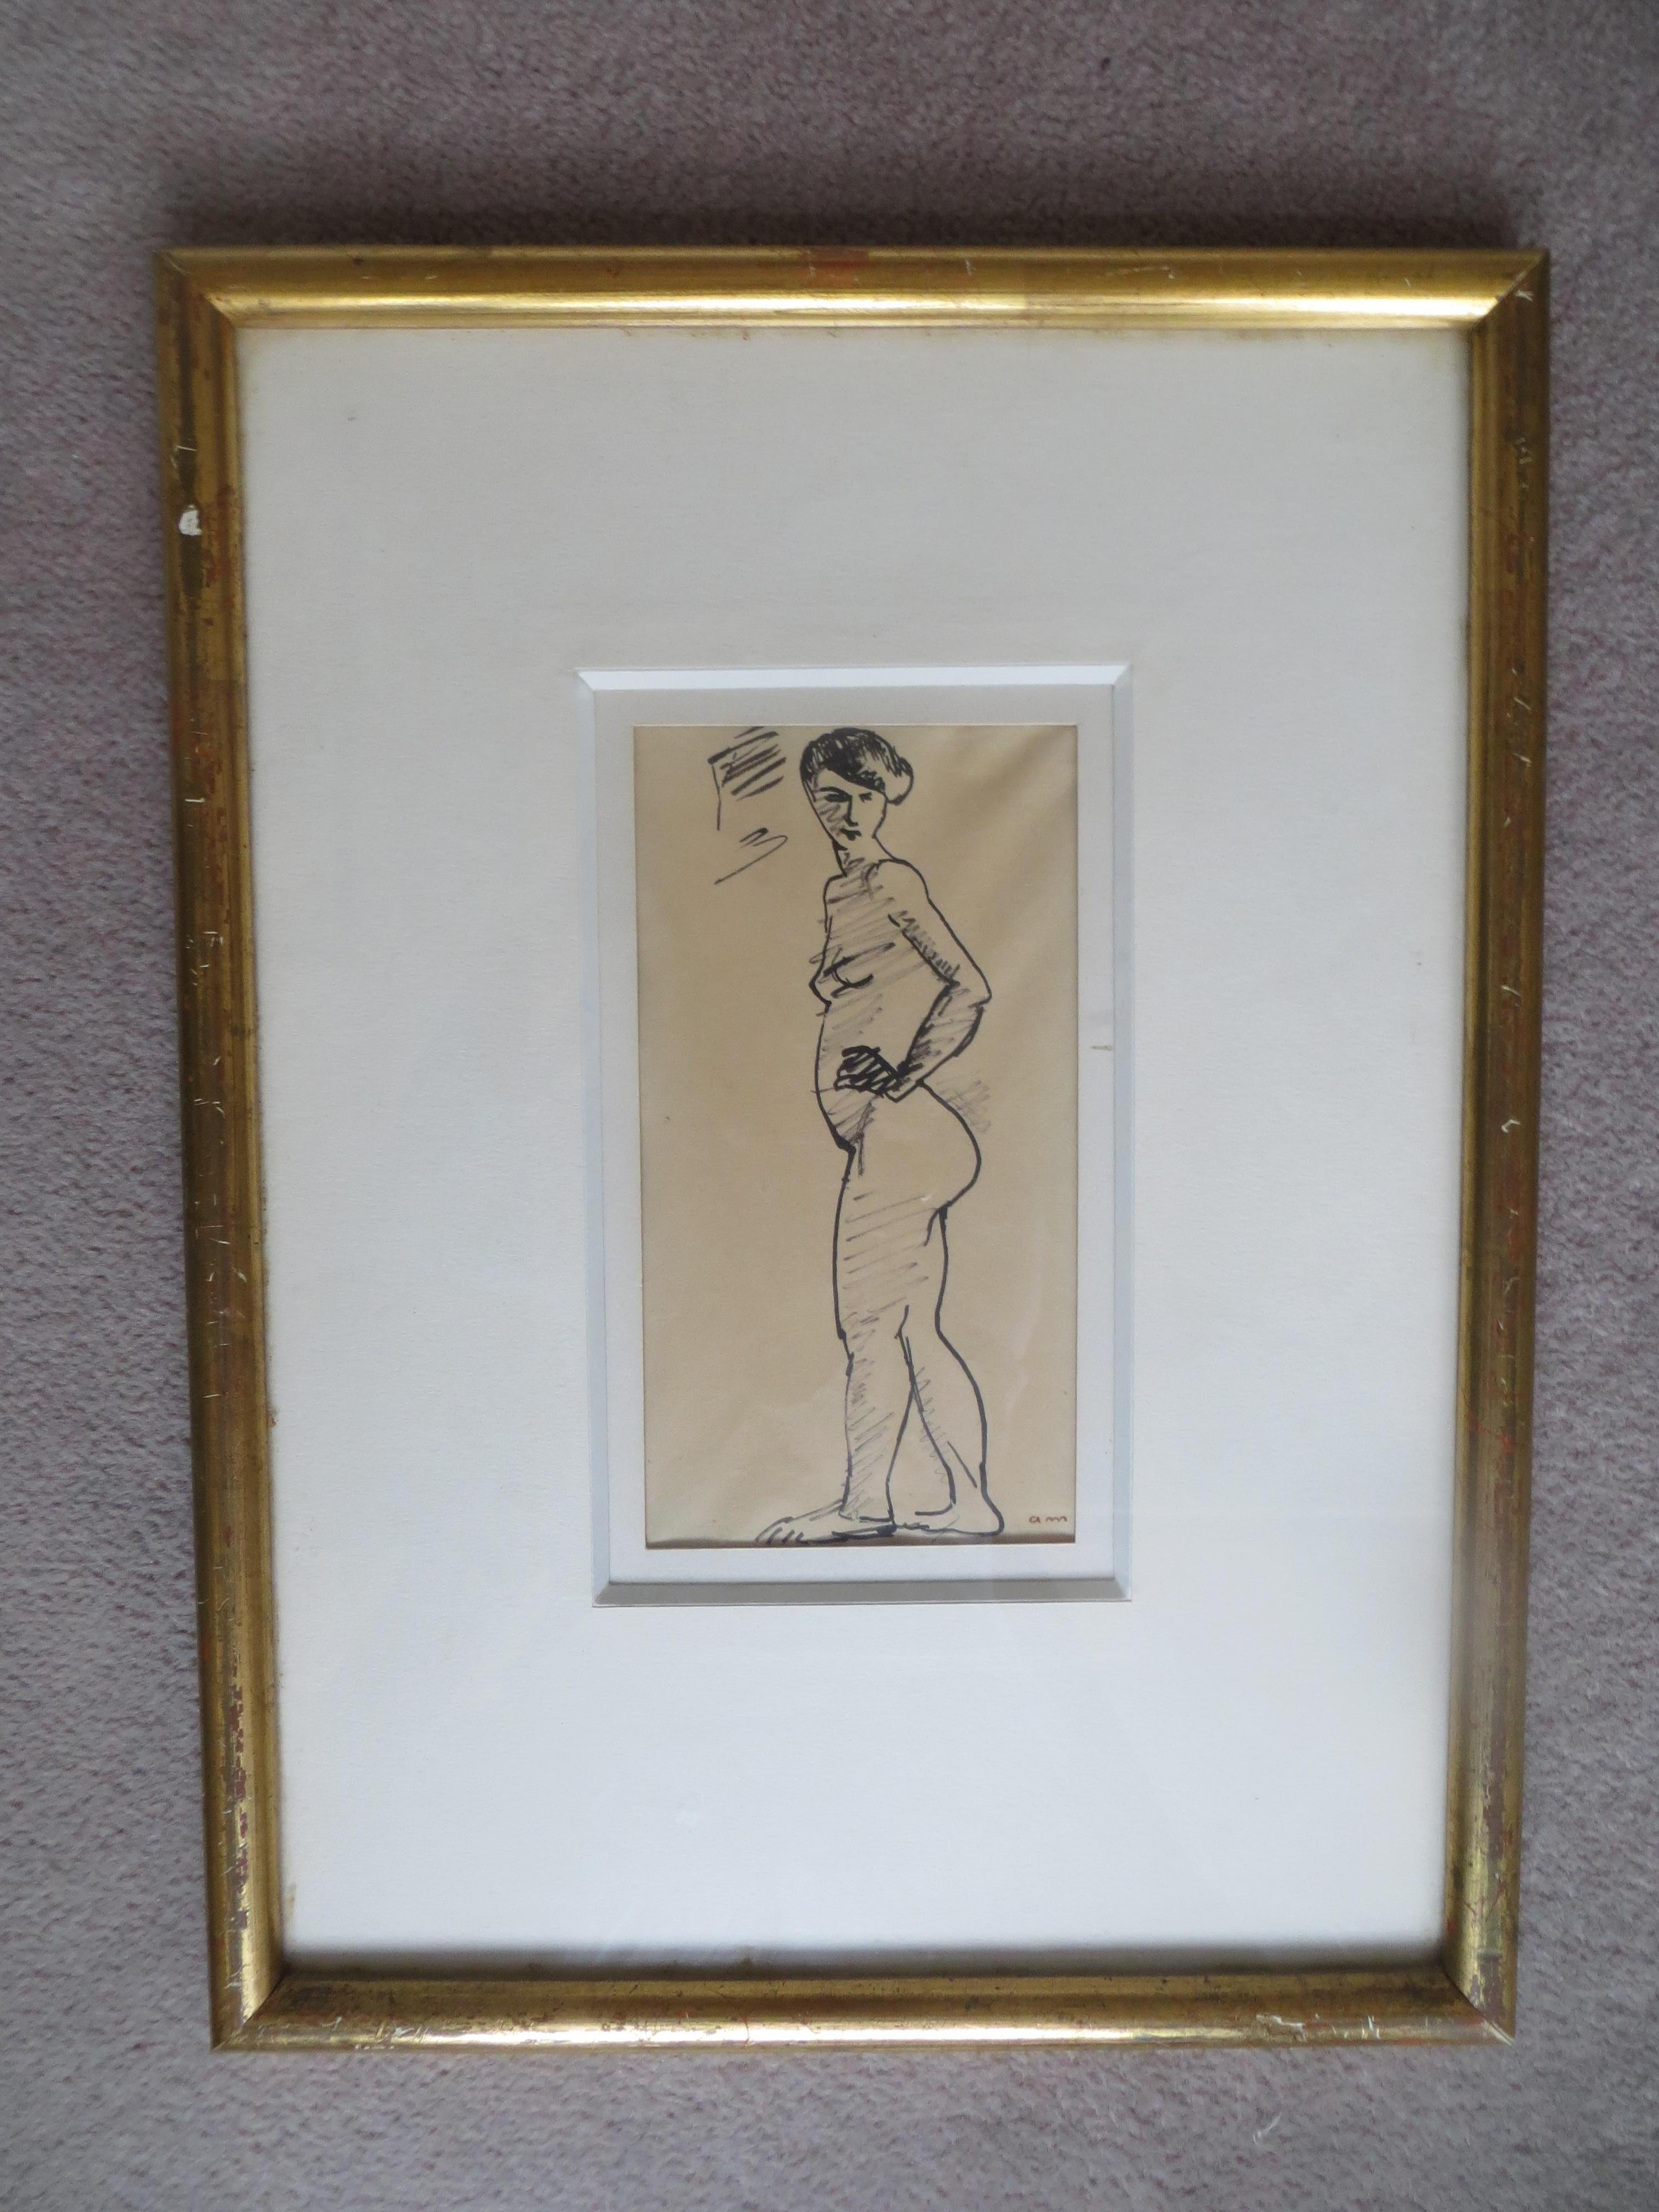 Tuschezeichnung auf Papier, montiert auf einer Tafel von Albert Marquet ;. Er war ein französischer Maler. Er gehörte zunächst zu den Fauve-Malern und war ein lebenslanger Freund von Henri Matisse. In der Folge malt Marquet in einem eher